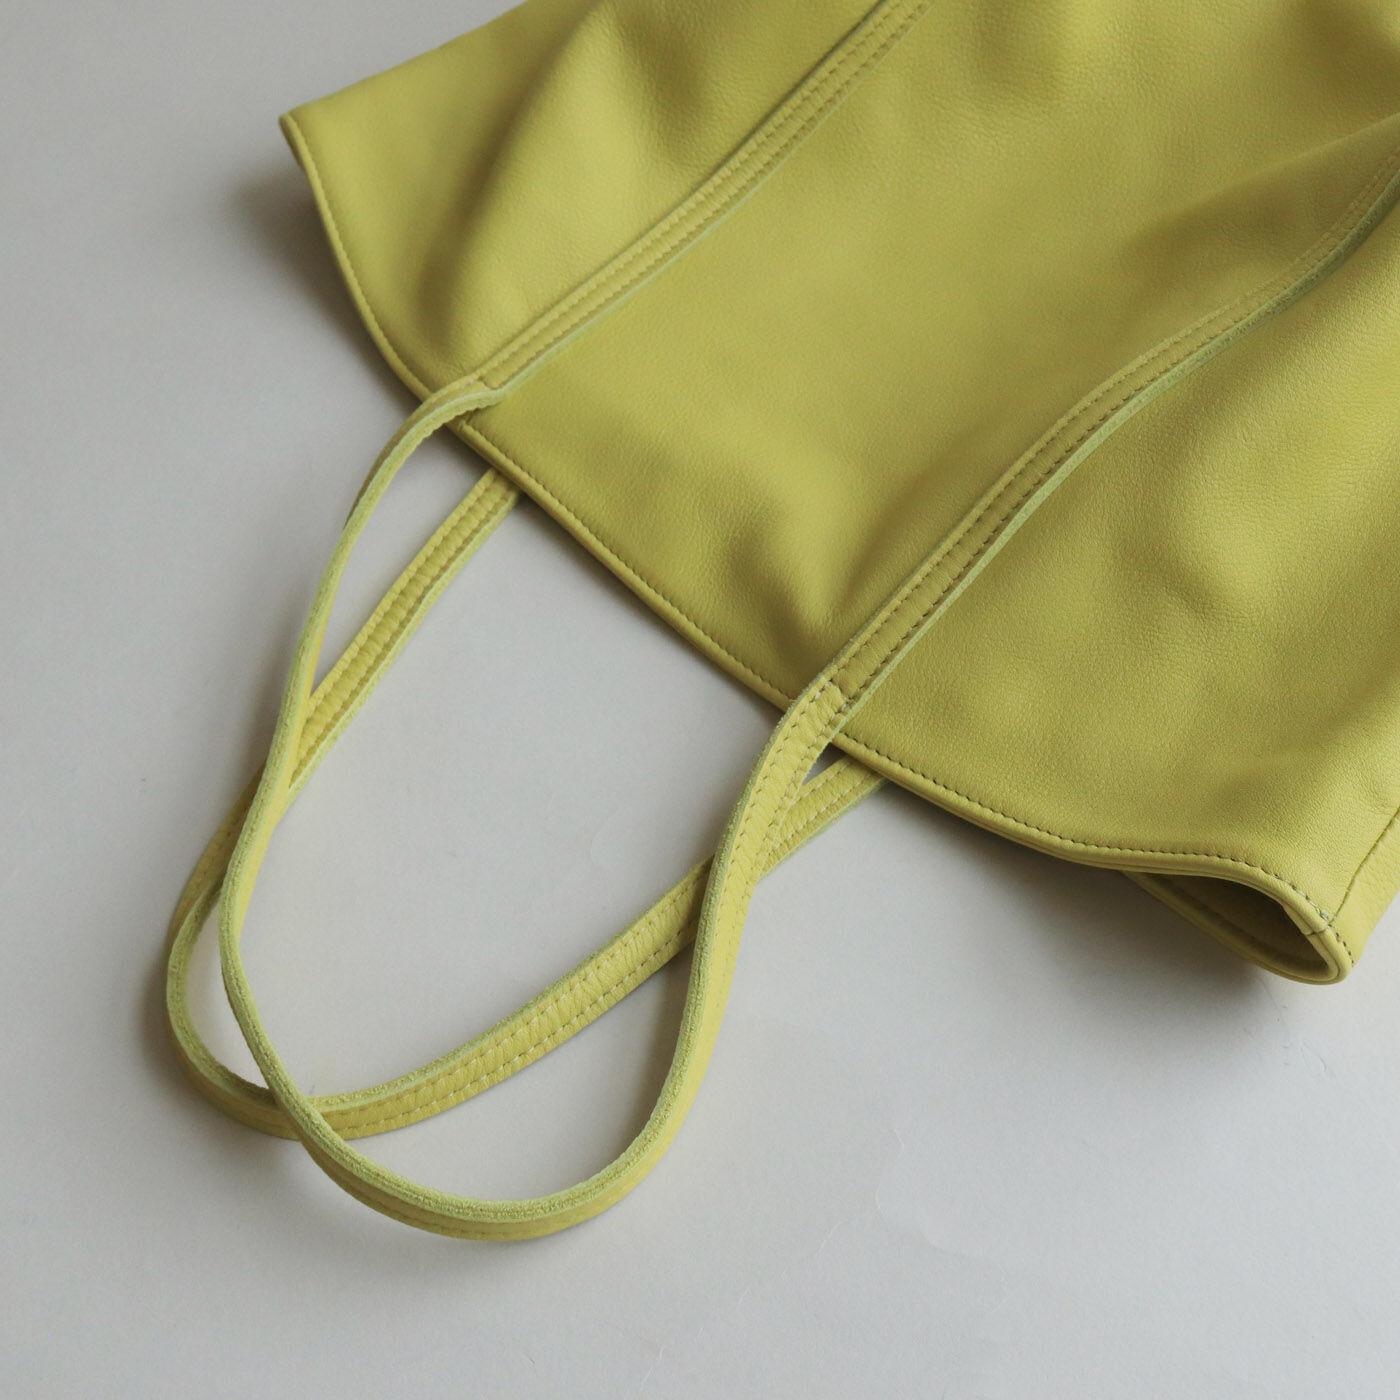 ＆Stories|福岡の鞄作家と作った 職人本革のトゥーシーンバッグ〈ライムイエロー〉|華奢な持ち手が軽やかで上品。